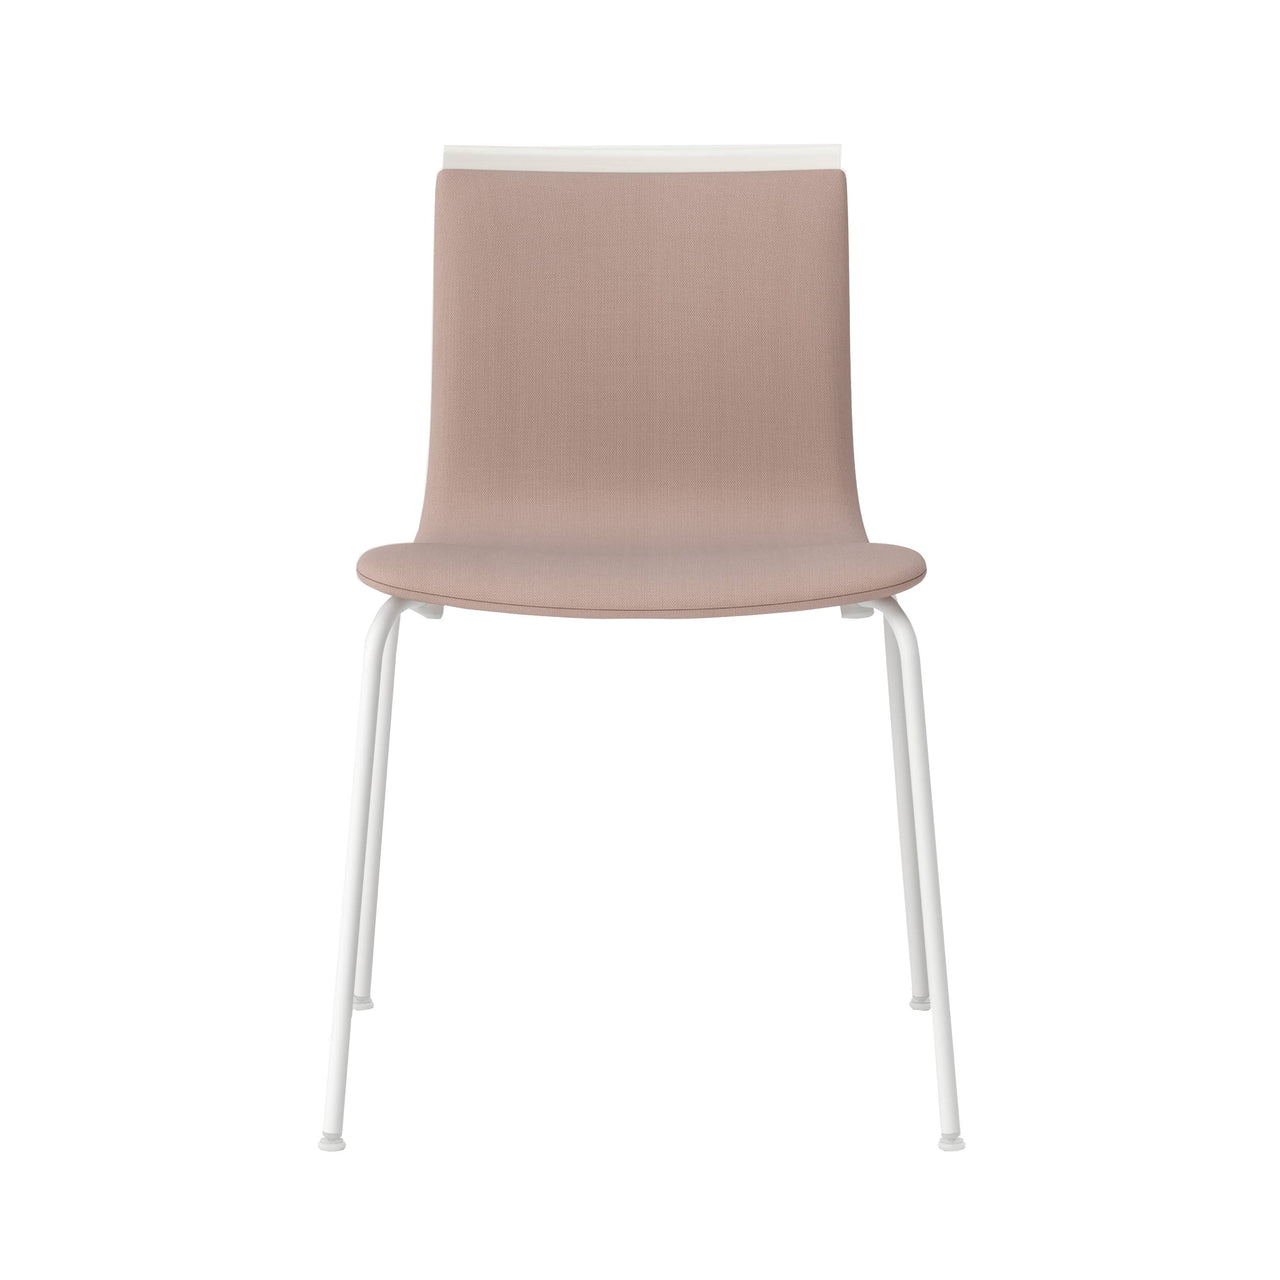 Serif Chair: Tube Legs + Upholstered